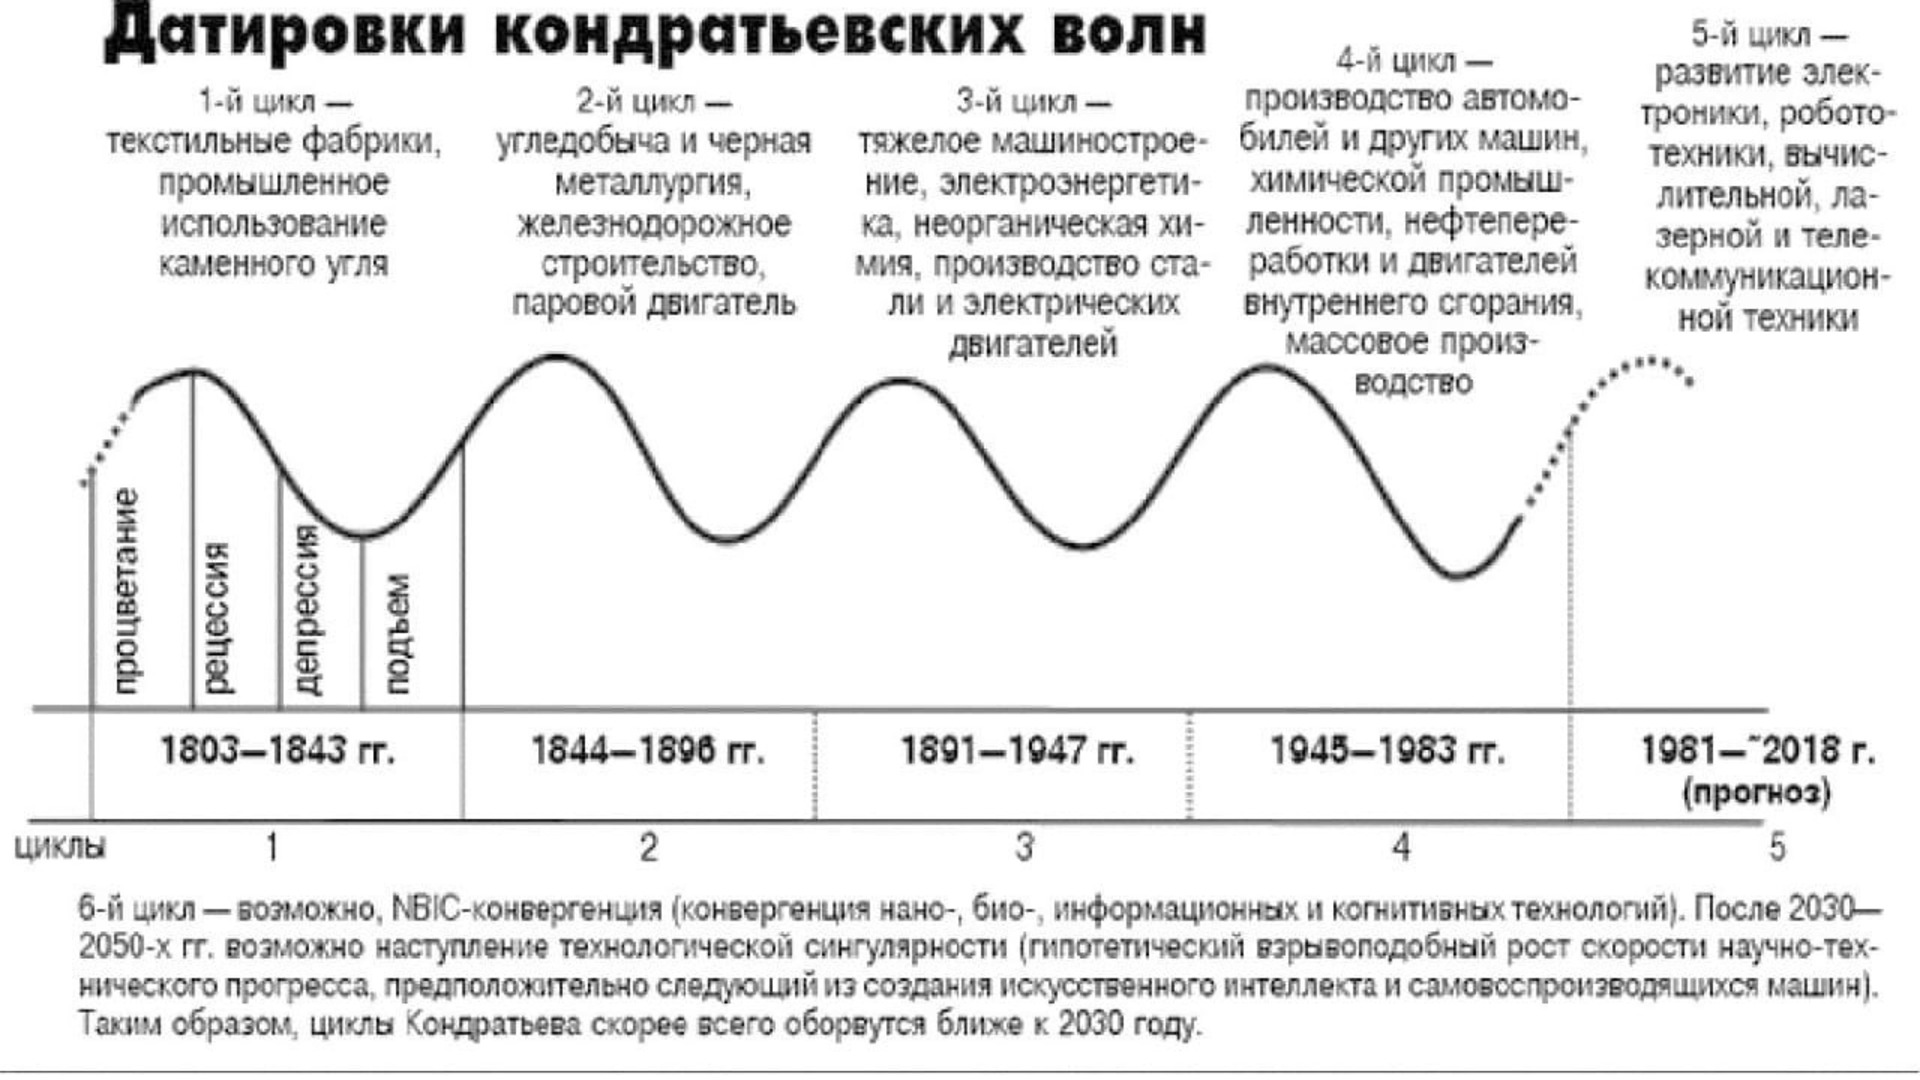 В течении 2 е жизни. Теория «длинных волн» в экономике н.д. Кондратьева. Циклы н д Кондратьева. Теория длинных циклов н.д. Кондратьева. Датировки больших циклов Кондратьева.